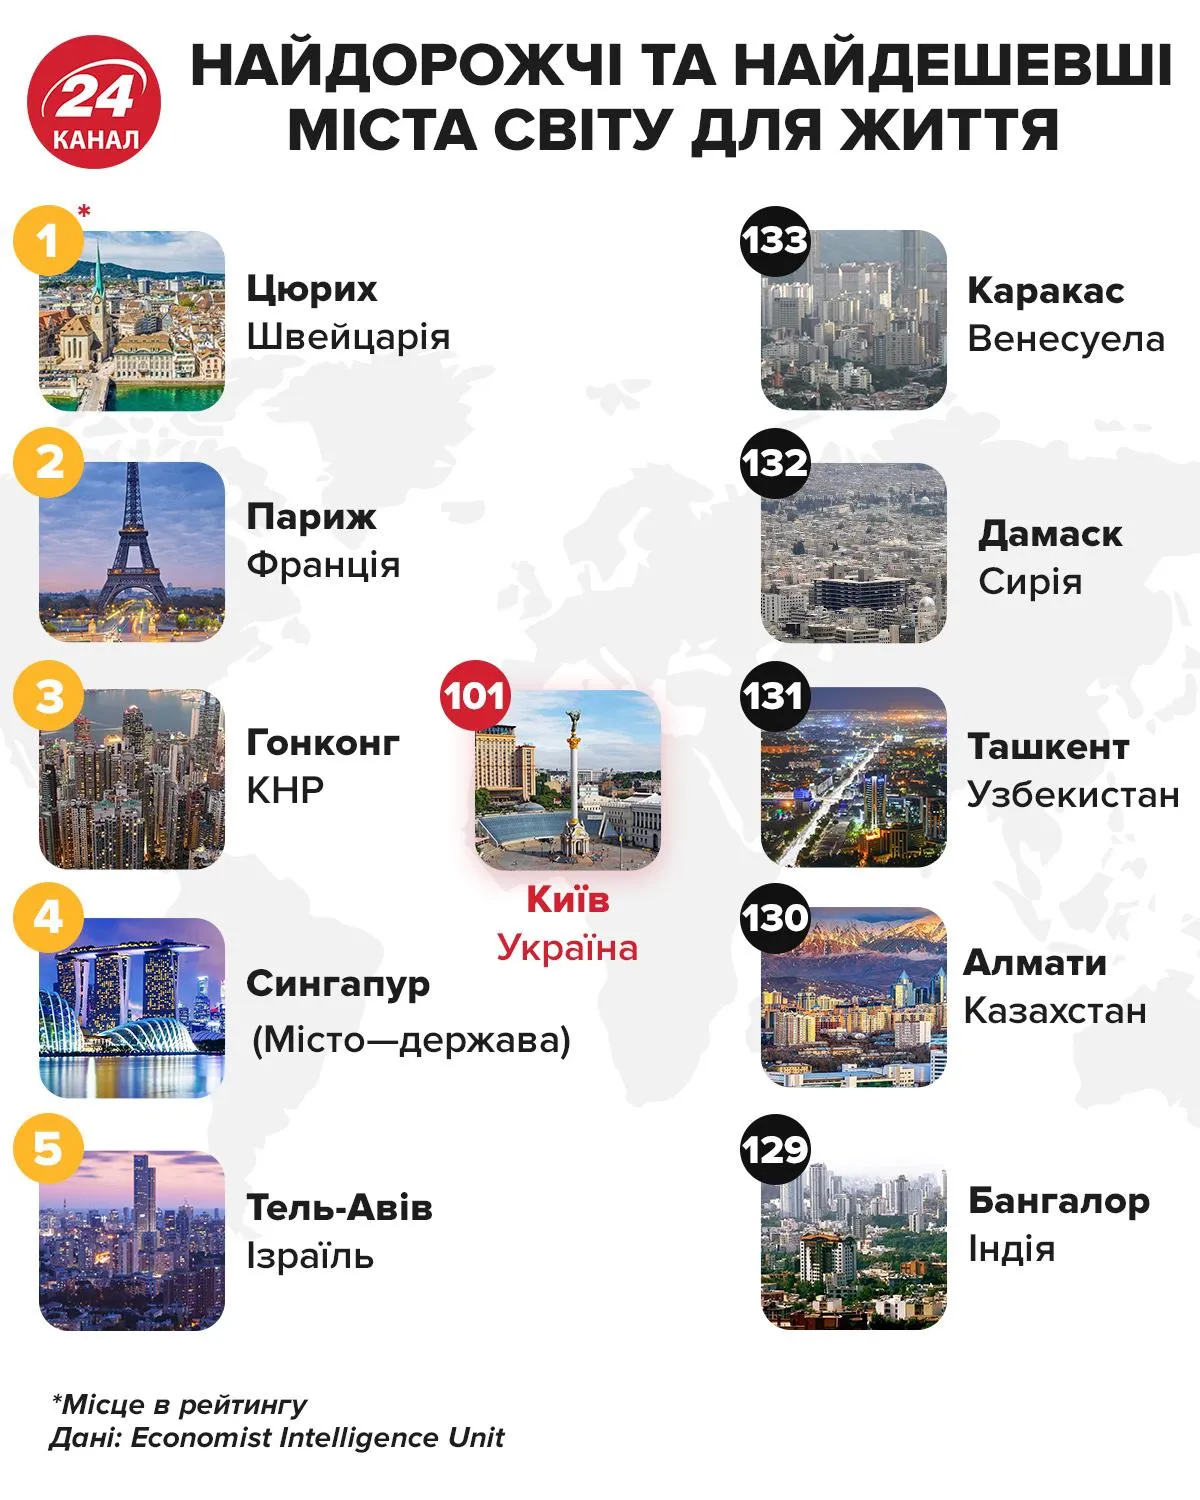 Самые дорогие и самые дешевые города мира Инфографика 24 канал